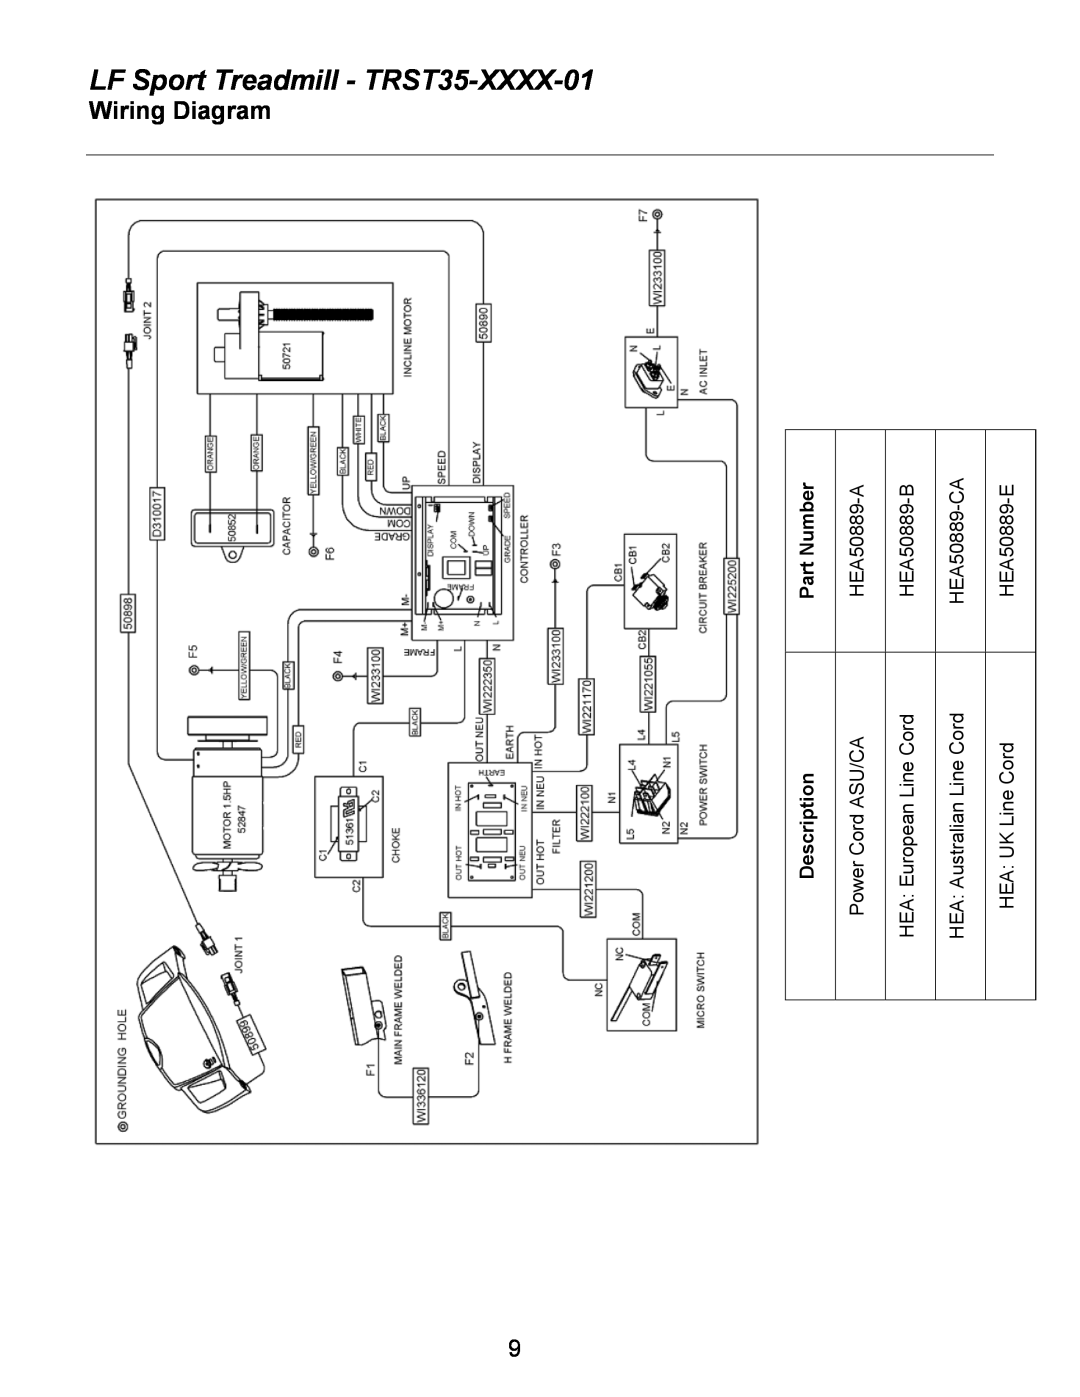 Life Fitness Wiring Diagram, LF Sport Treadmill - TRST35-XXXX-01, Part Number, HEA50889-A, HEA50889-B, HEA50889-CA 